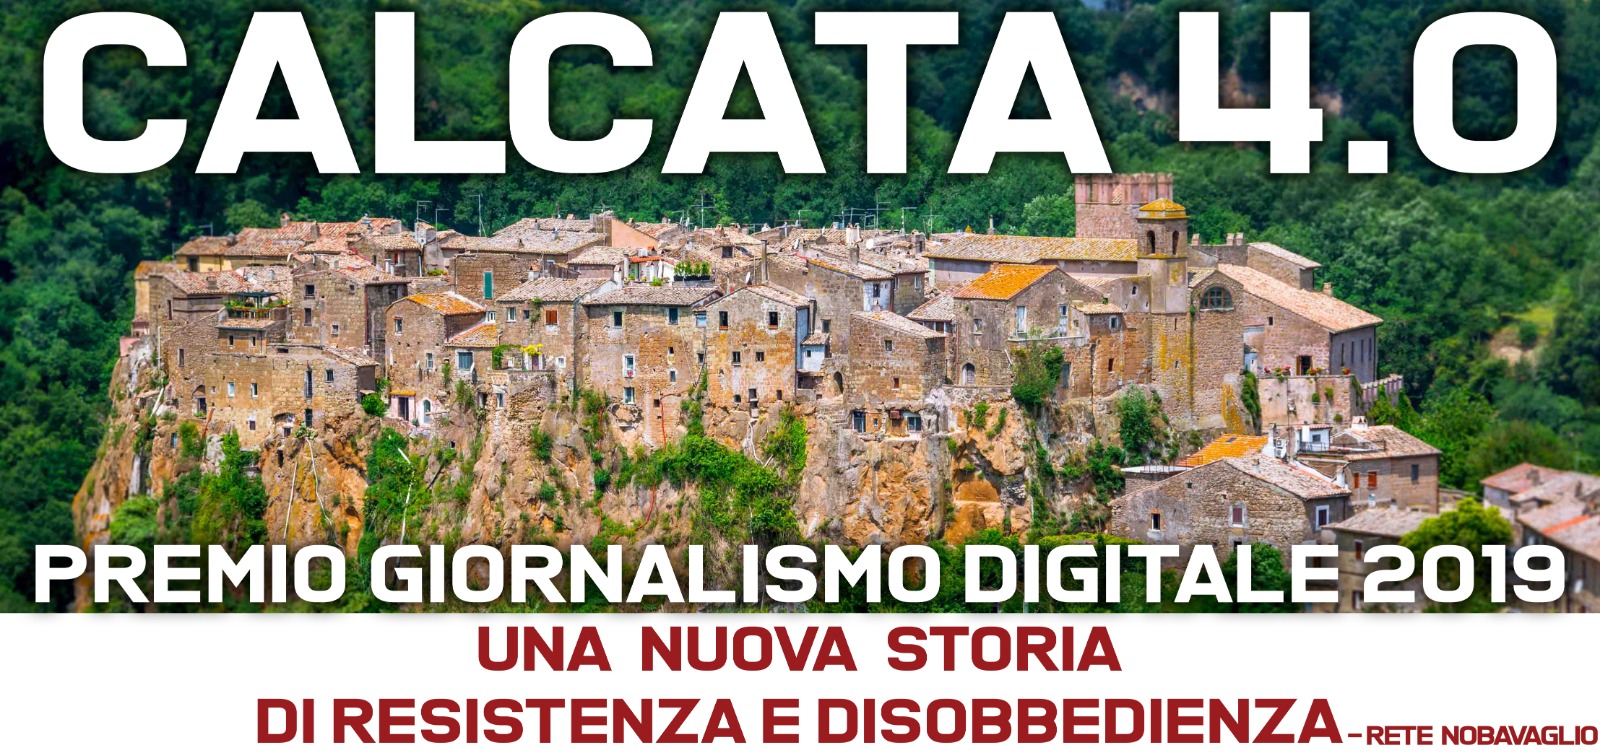 CALCATA 4.0 - Una nuova storia di resistenza e disobbedienza                                                    PREMIO GIORNALISMO DIGITALE - RETE NOBAVAGLIO